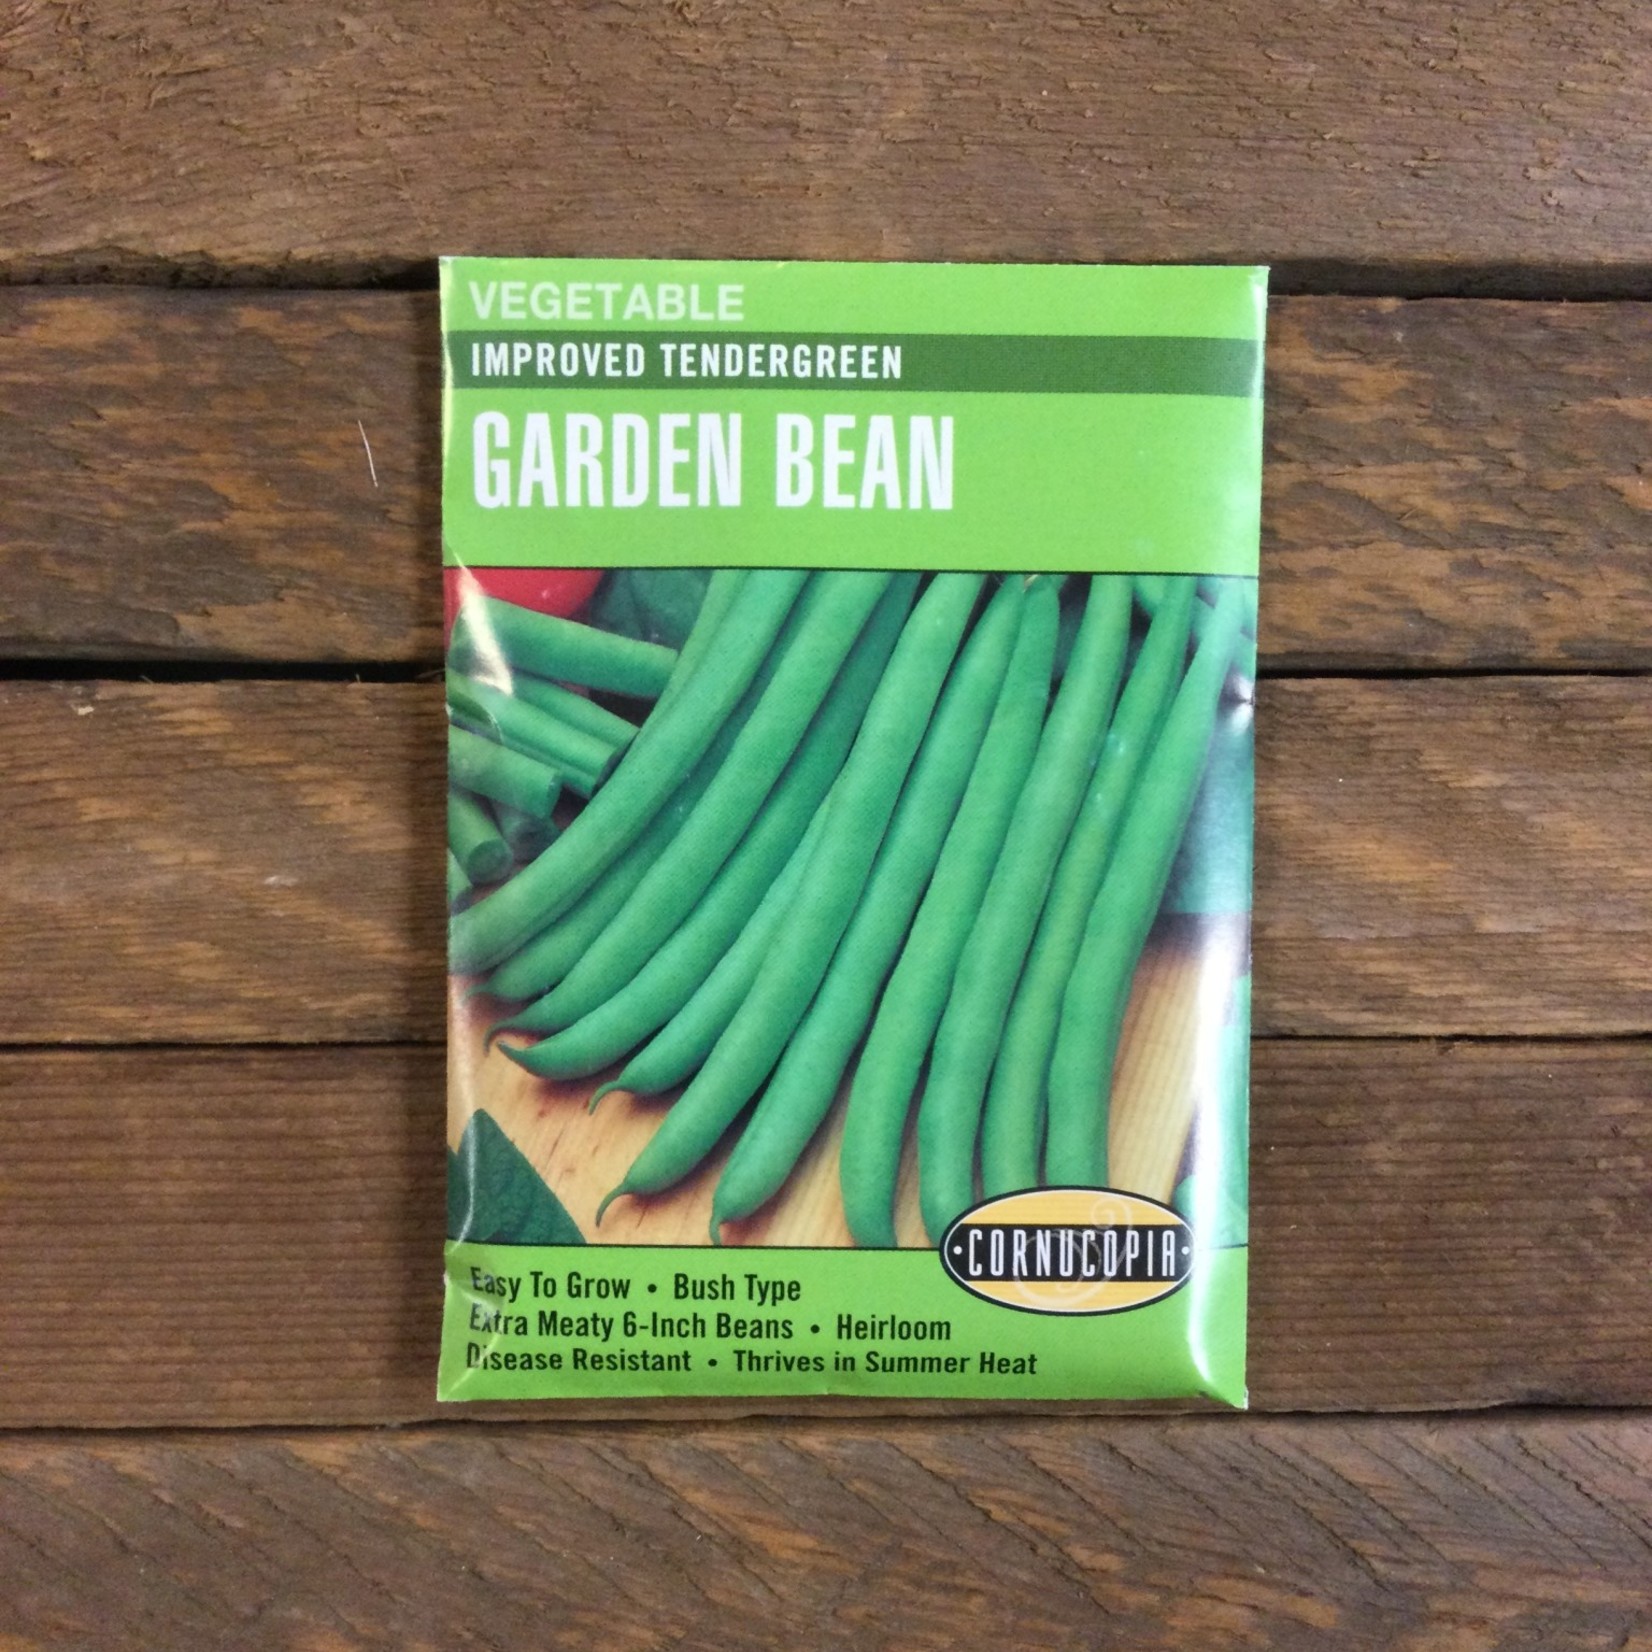 Cornucopia Bean - Bean Bush Tendergreen Improved